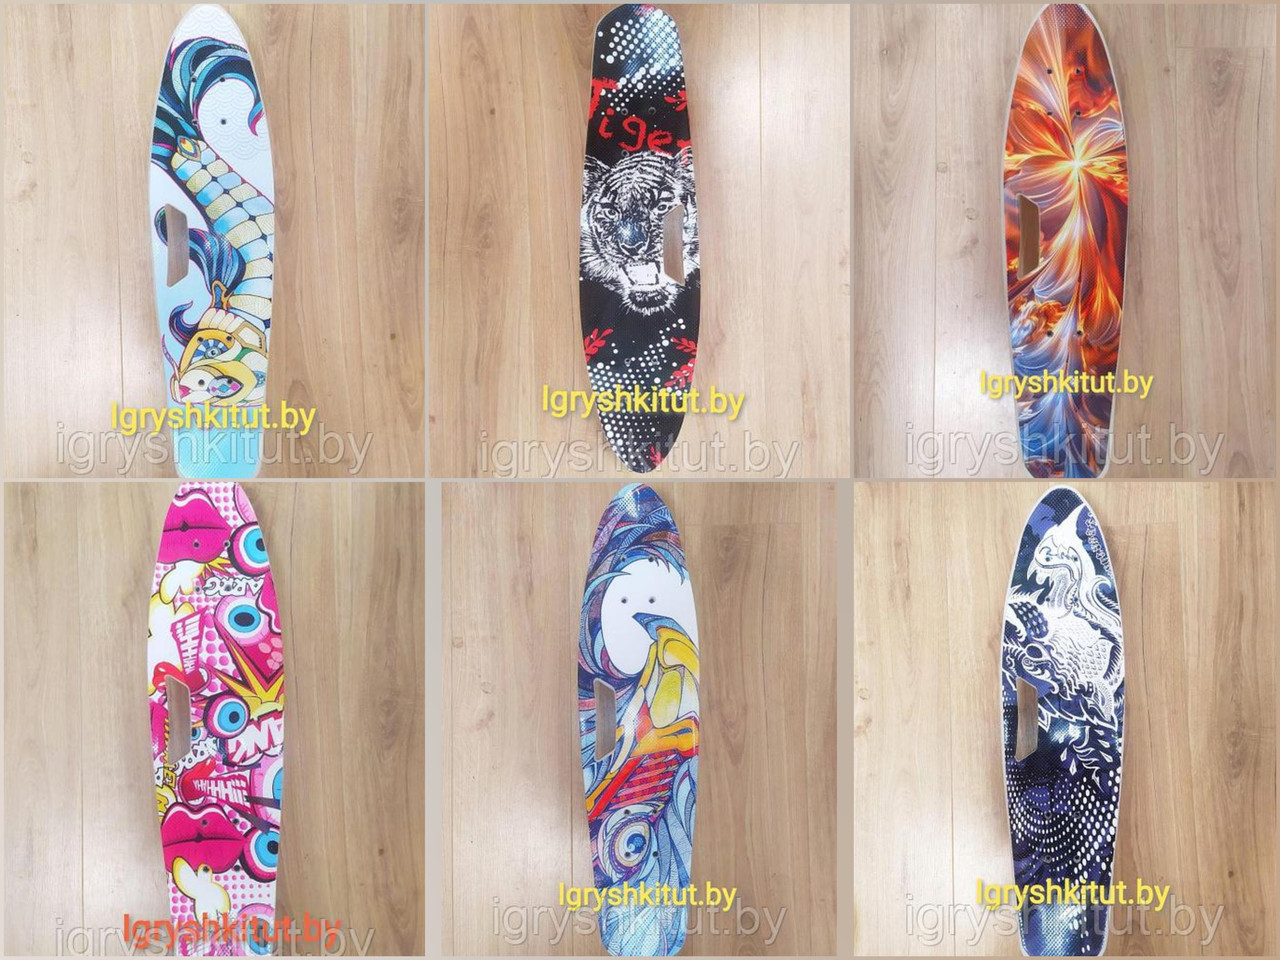 Скейтборд с ручкой и граффити расцветкой PENNY BOARD Пенниборд принт СВЕТЯЩИЕСЯ Колёса (6 расцветок) арт. 8301, фото 1